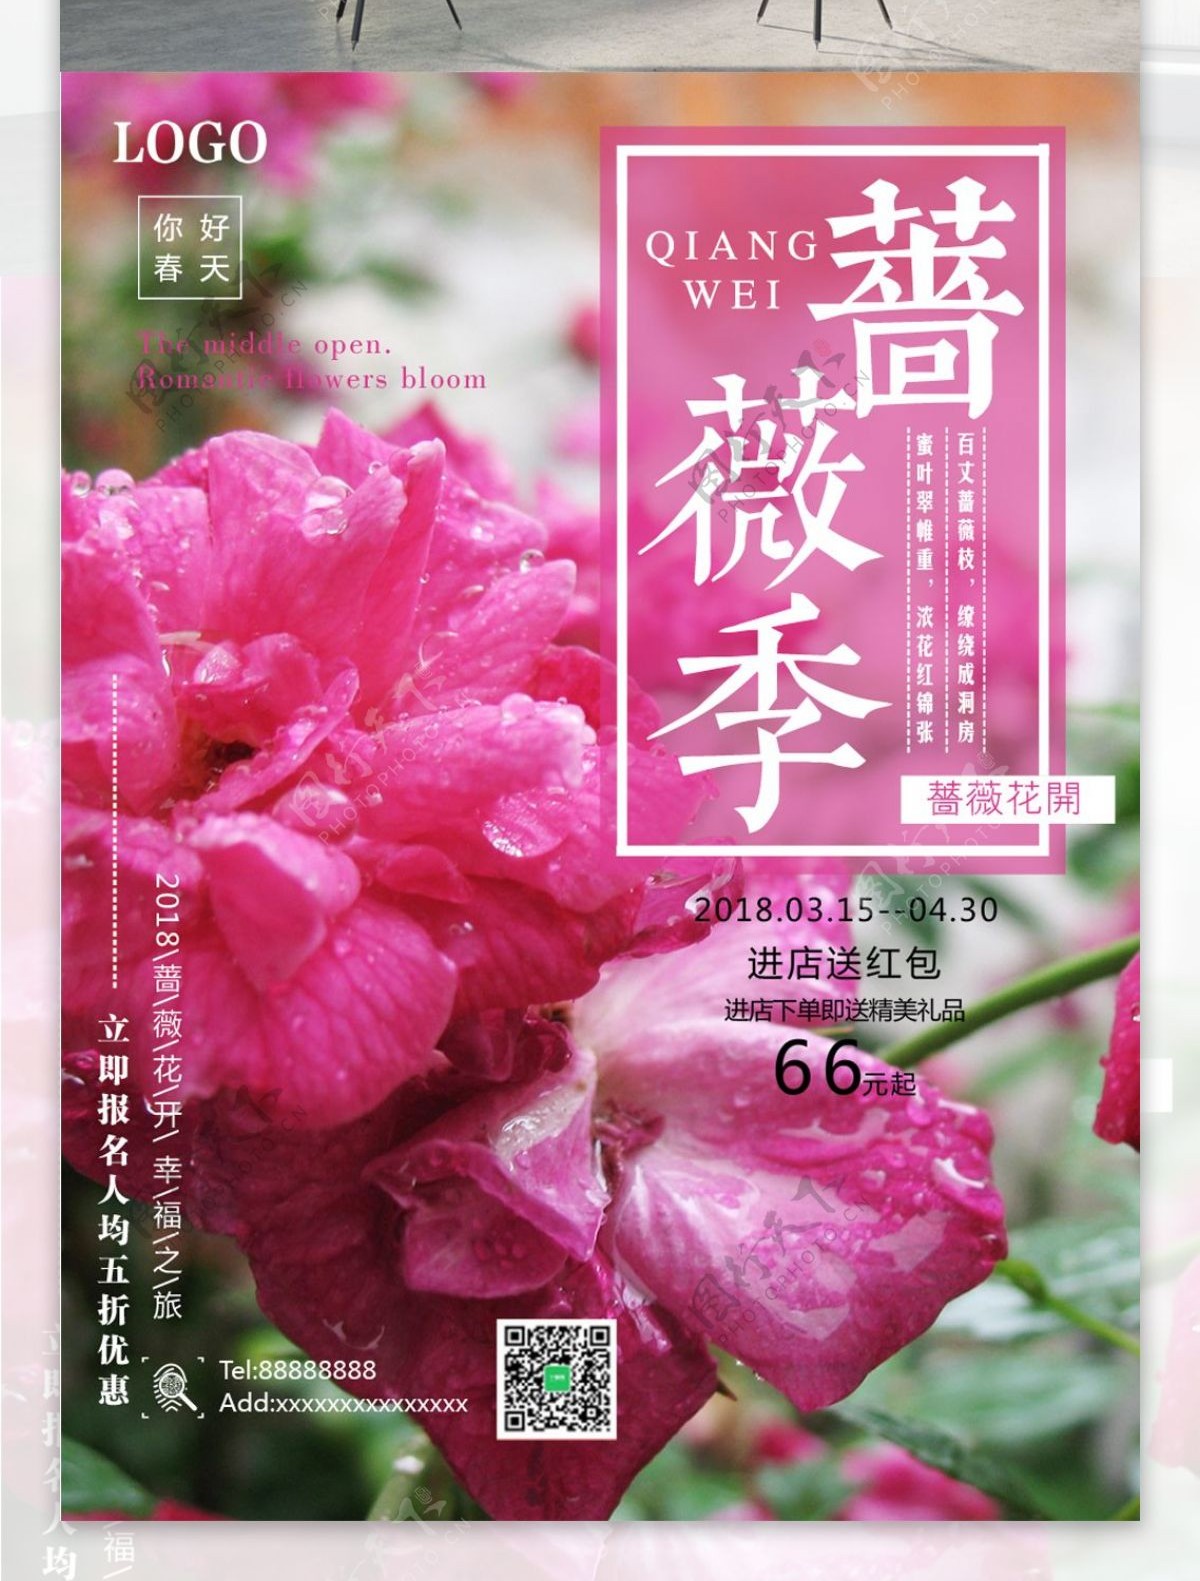 简约蔷薇季旅游促销海报